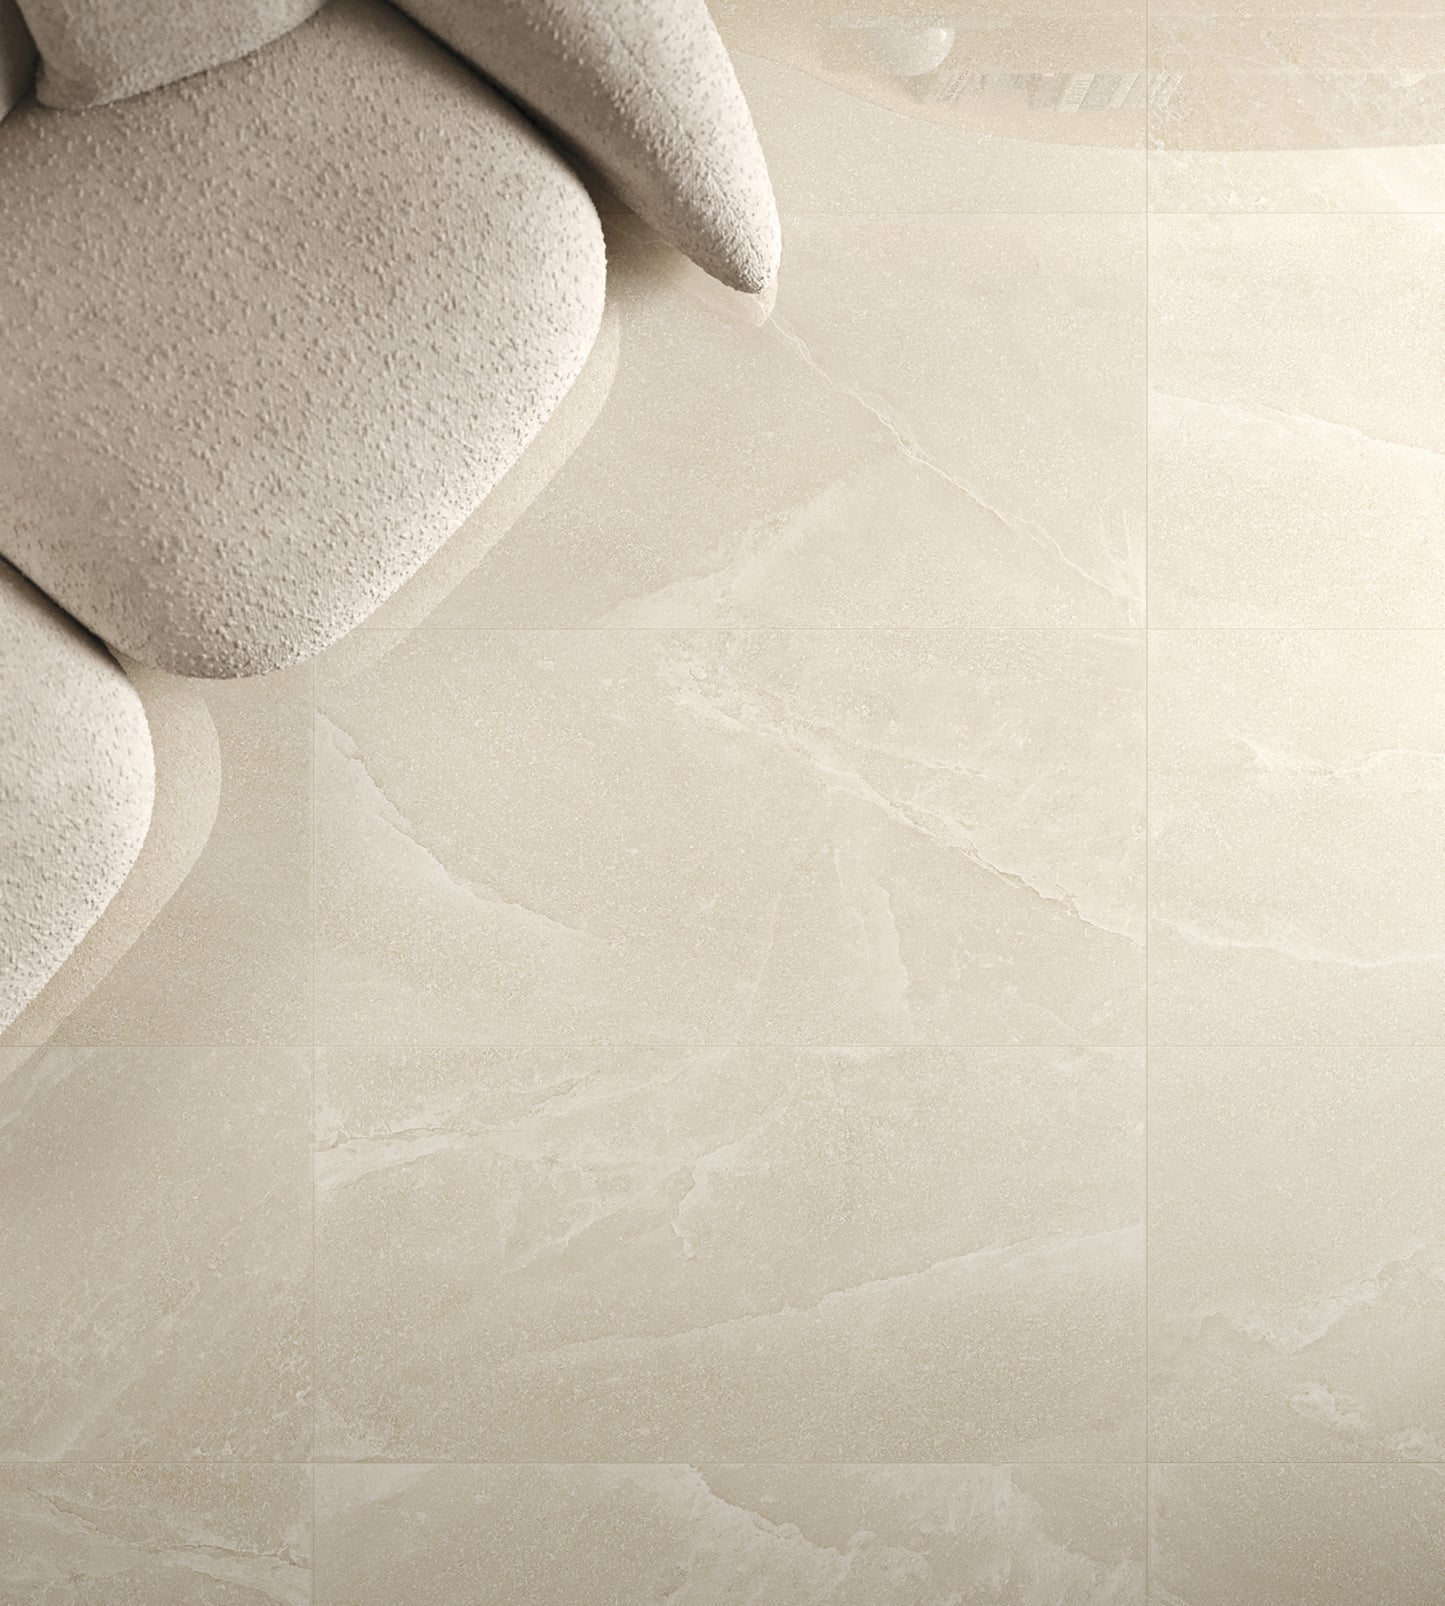 Sala con suelo de elegante acabado tipo mármol pulido